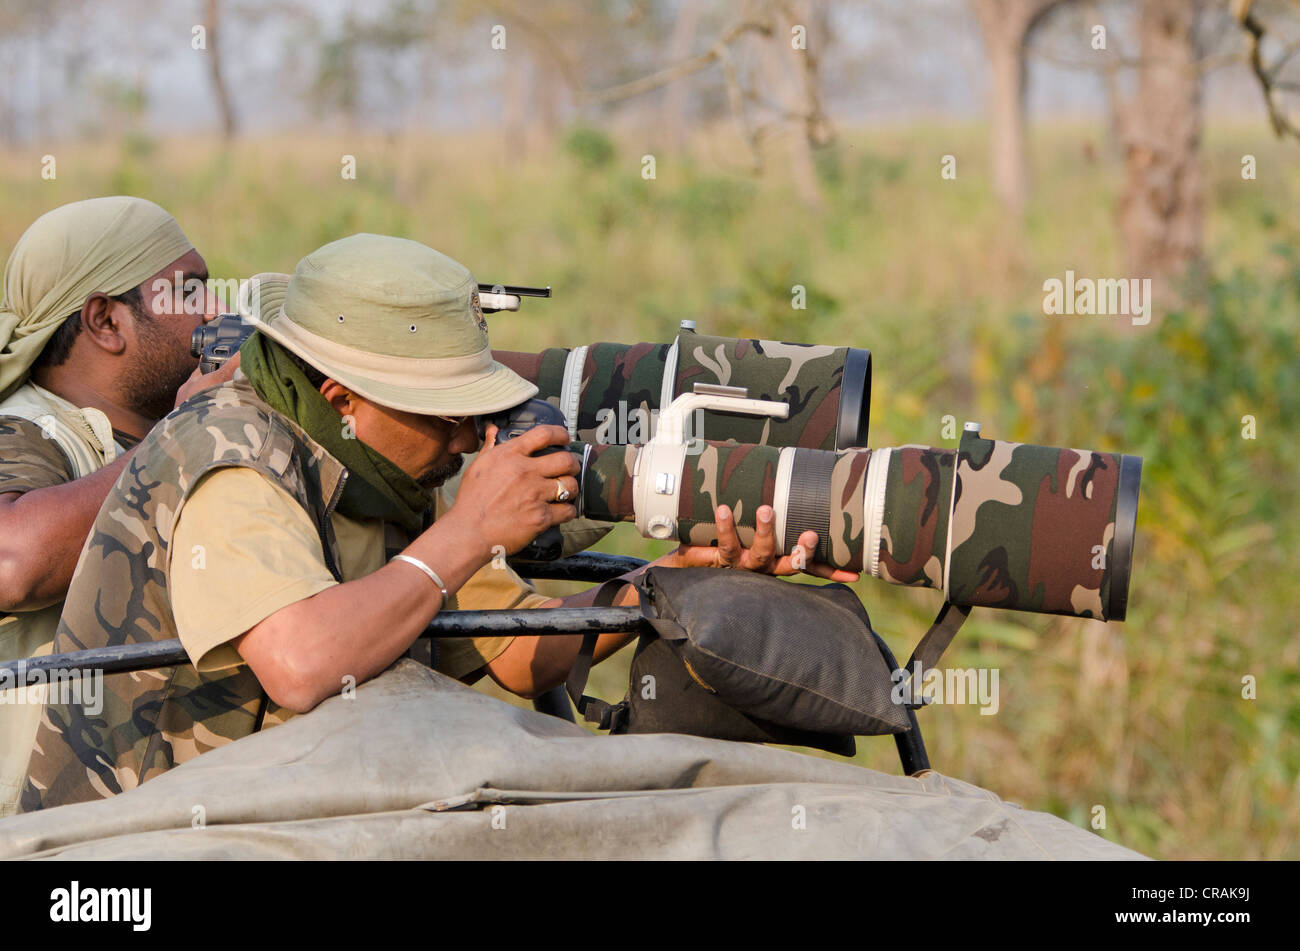 Indian wildlife photographers with telephoto lenses, Kaziranga National Park, Assam, Northeast India, India, Asia Stock Photo